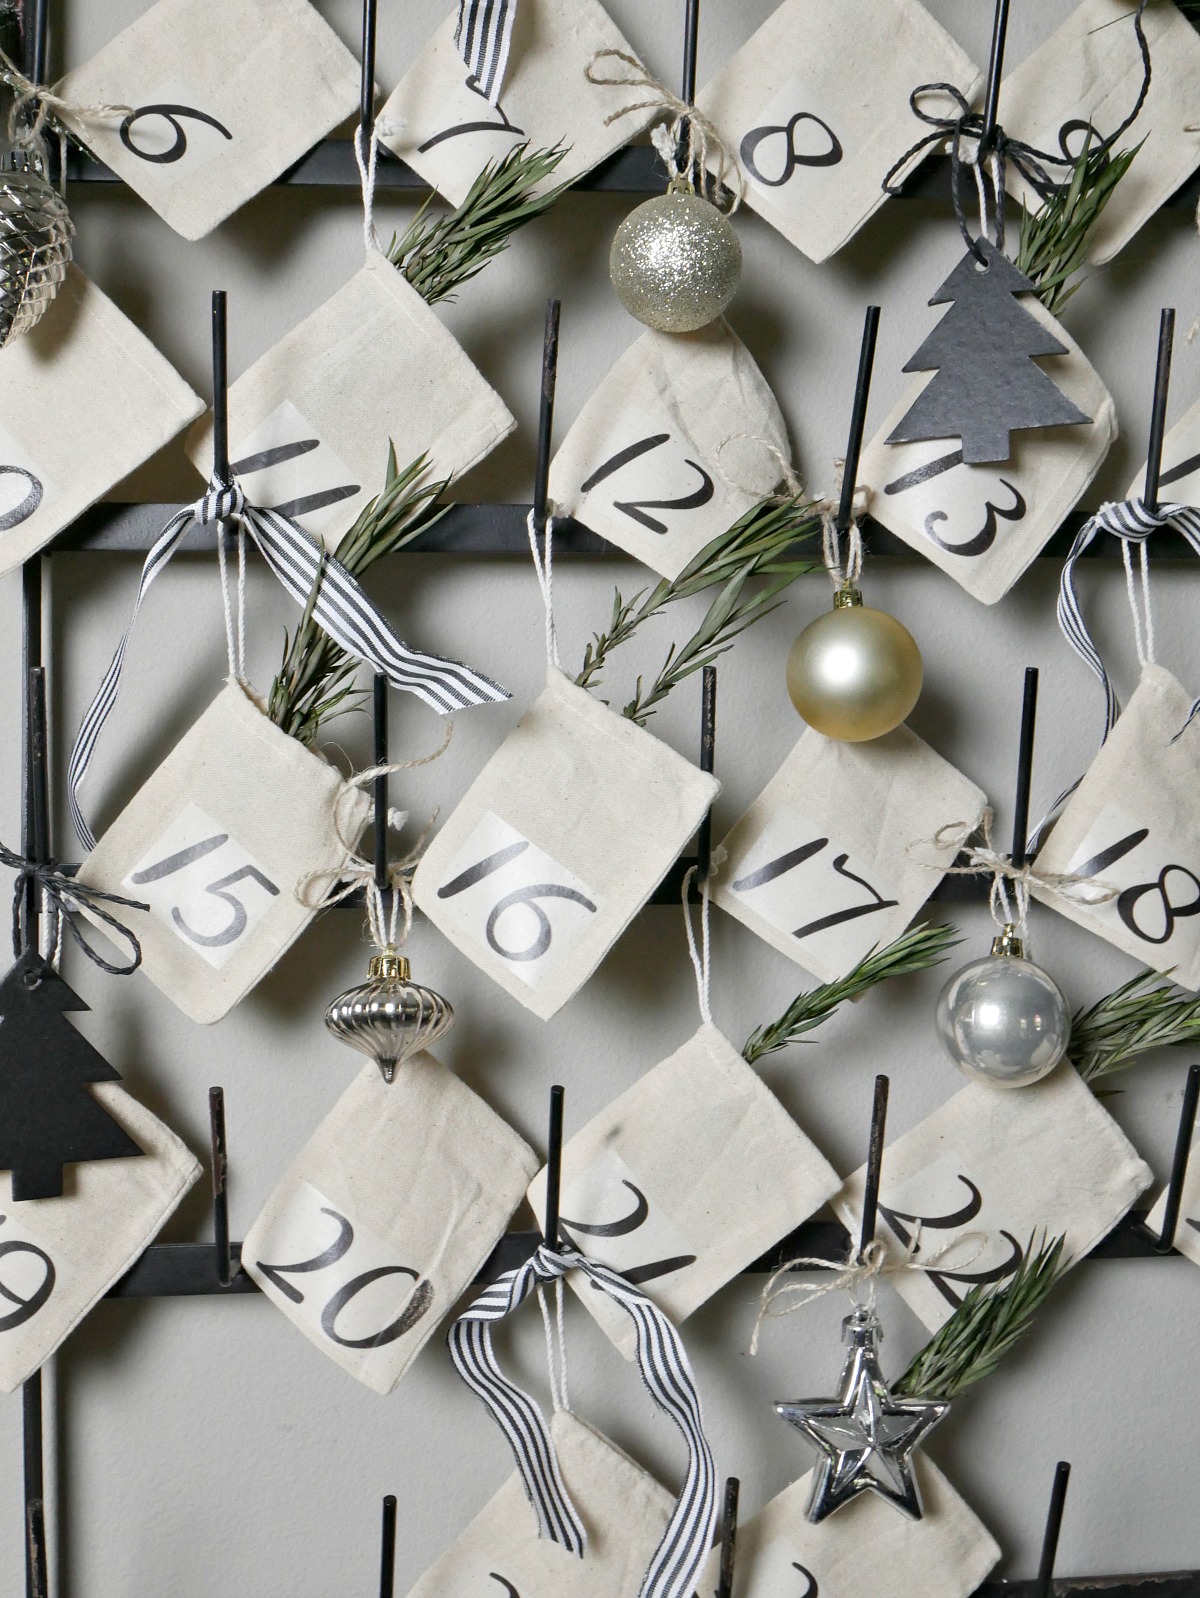 calendario de adviento manualidades, ideas sencillas y originales para decorar tu casa, calendarios de diciembre hechos a mano 